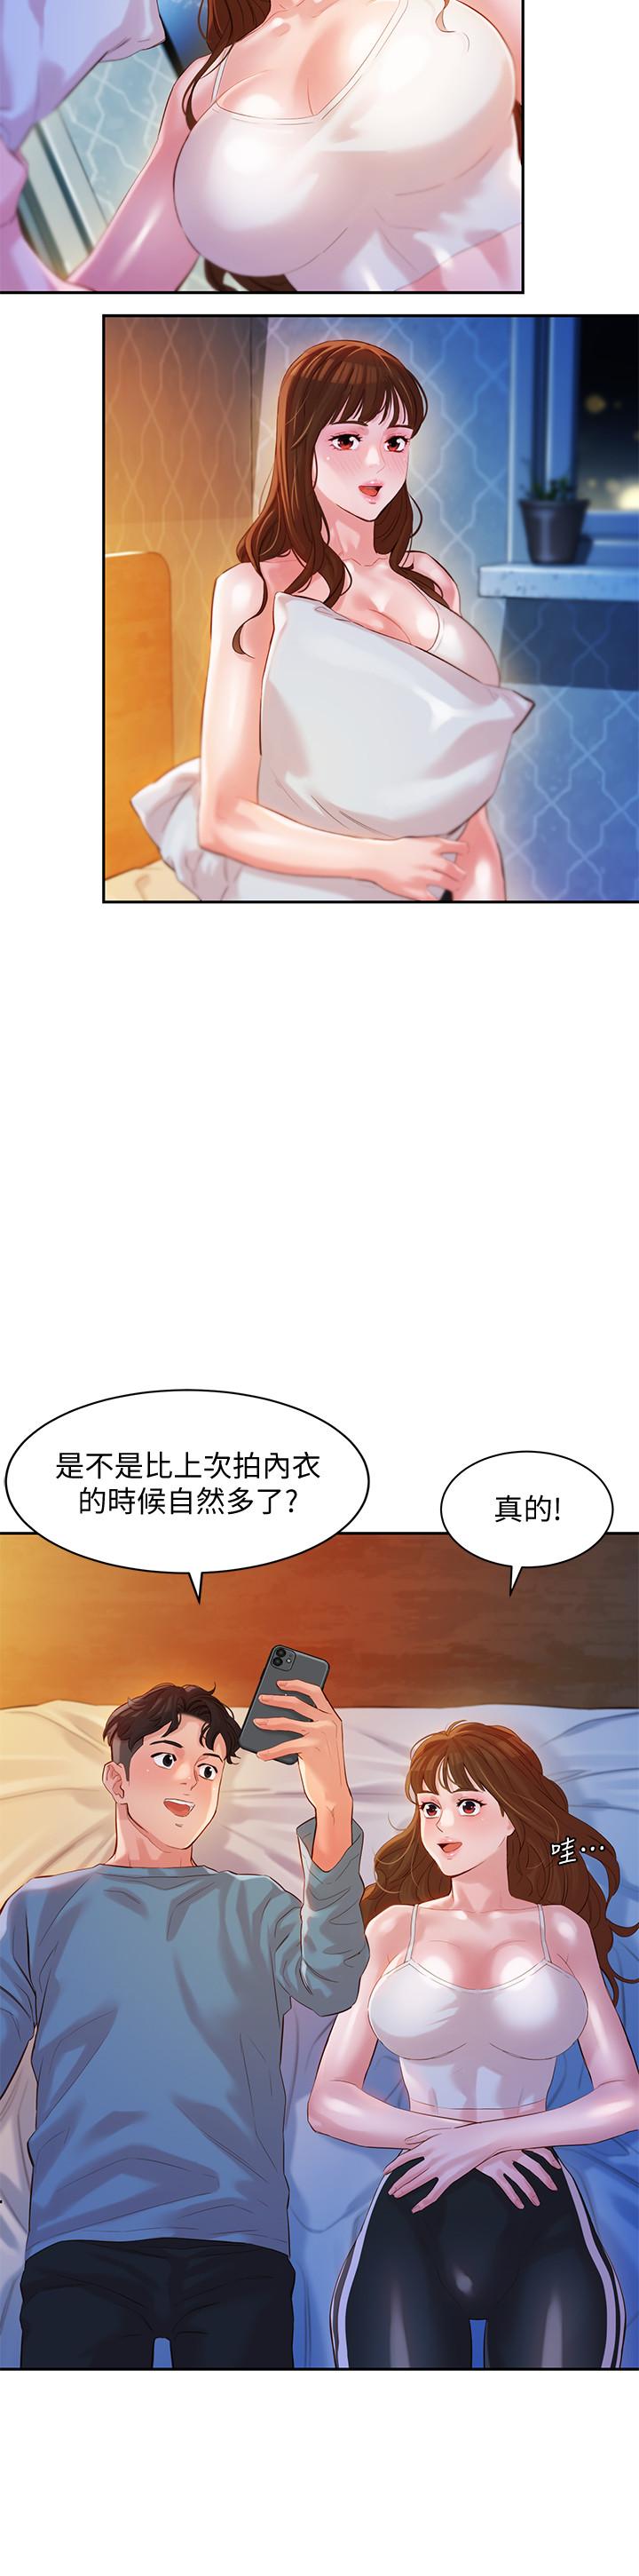 韩国污漫画 女神寫真 第14话-在两人之间流动的微妙情感 28